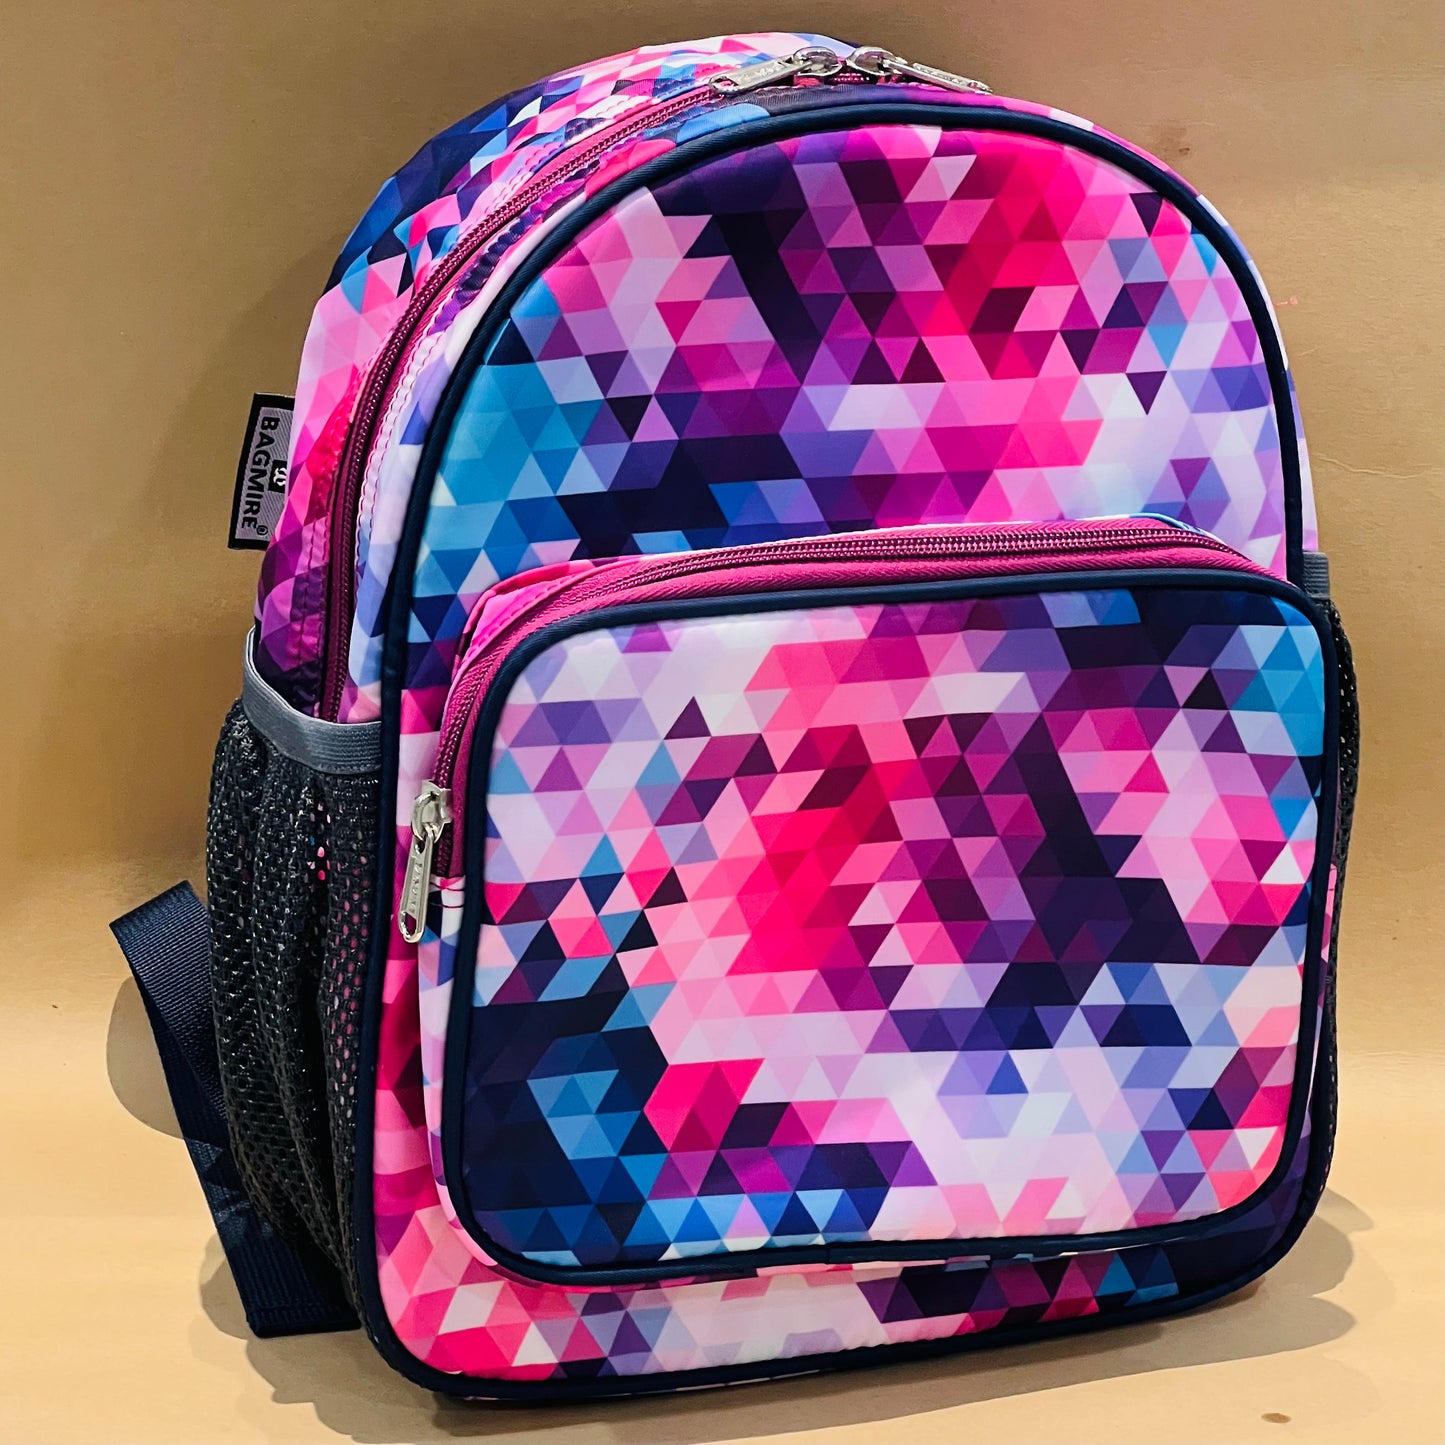 12” Premium School Bags